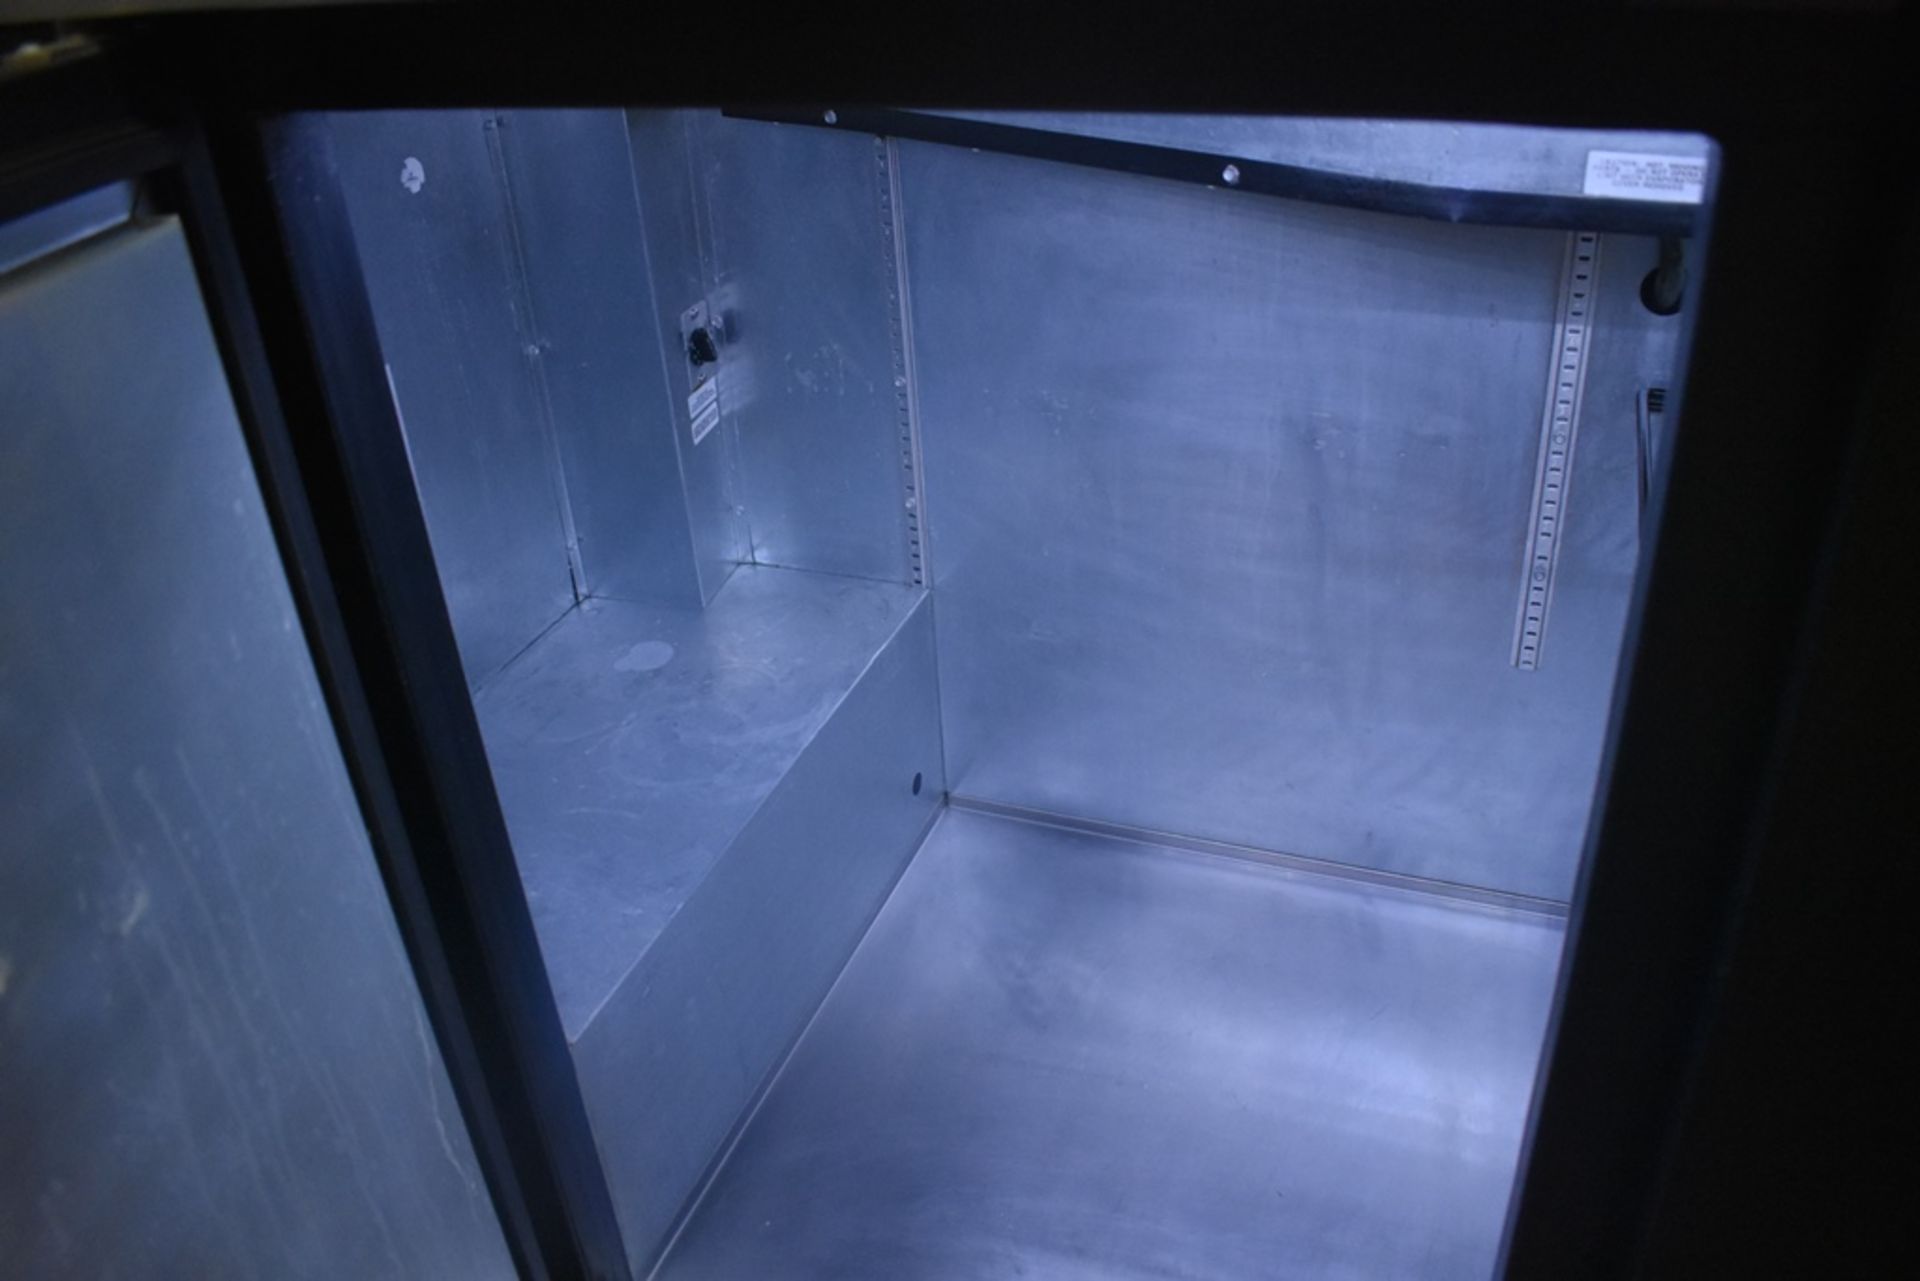 Mesa de trabajo refrigerada con cubierta en acero inoxidable marca True, modelo TBB-3, número de se - Image 15 of 20